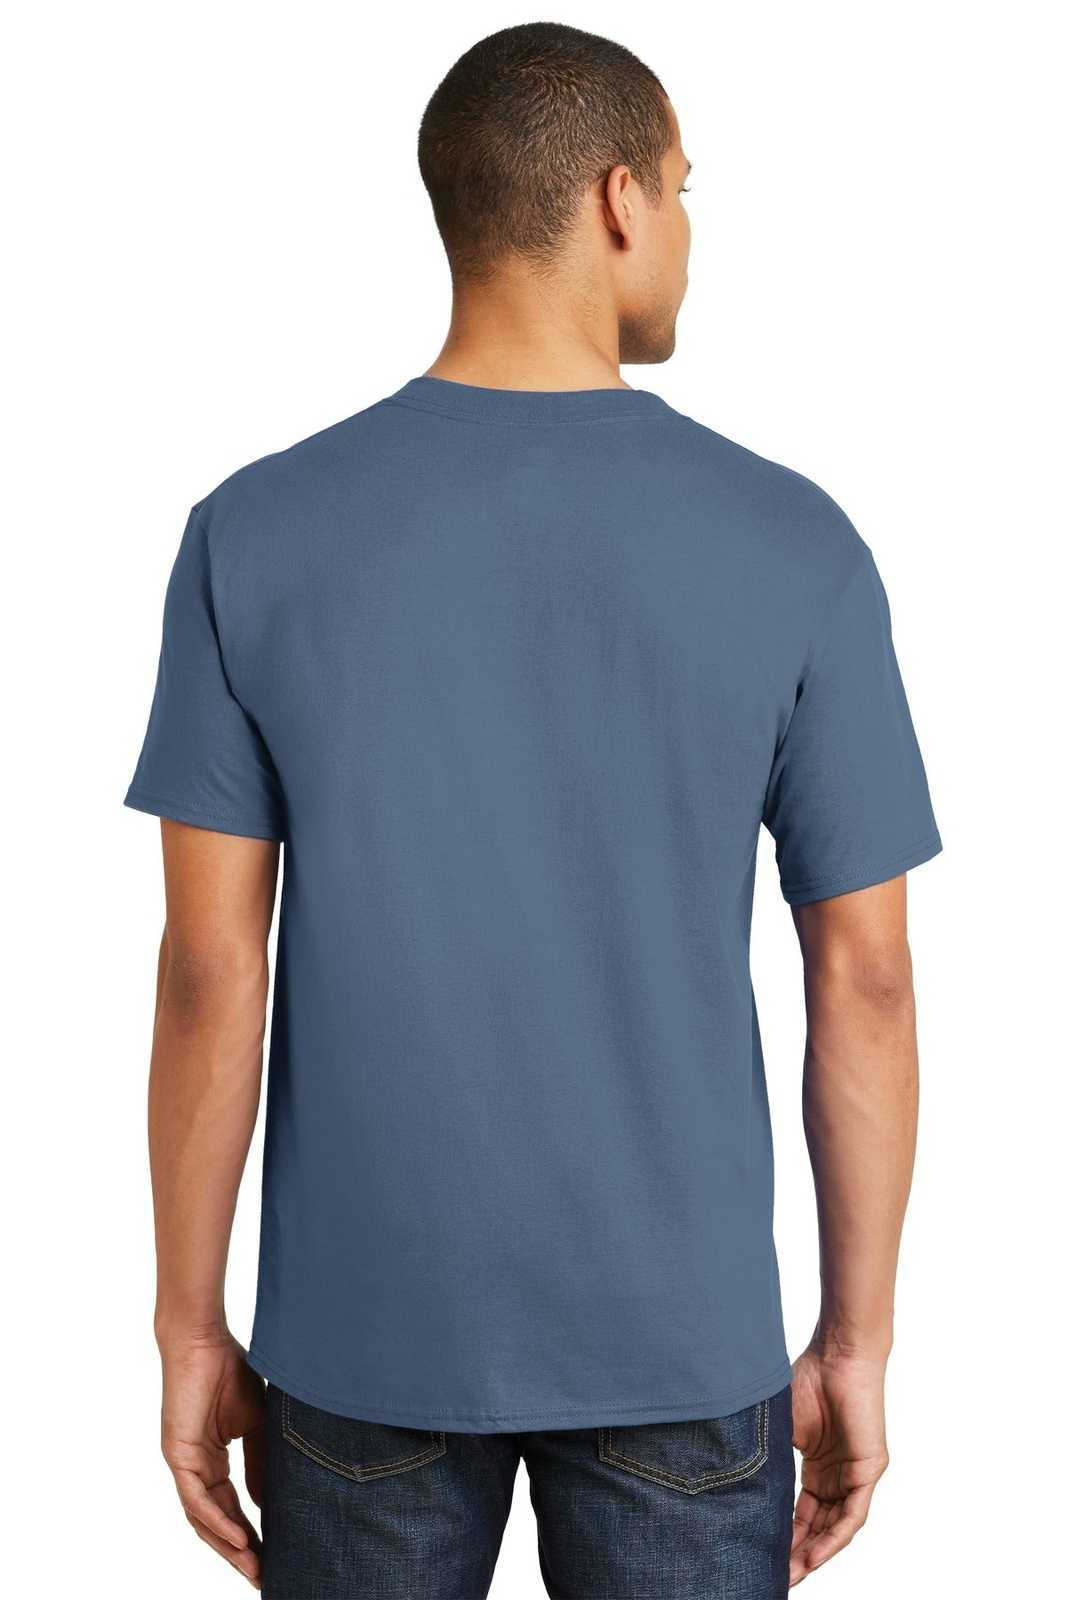 Hanes 5180 Beefy-T 100% Cotton T-Shirt - Denim Blue - HIT a Double